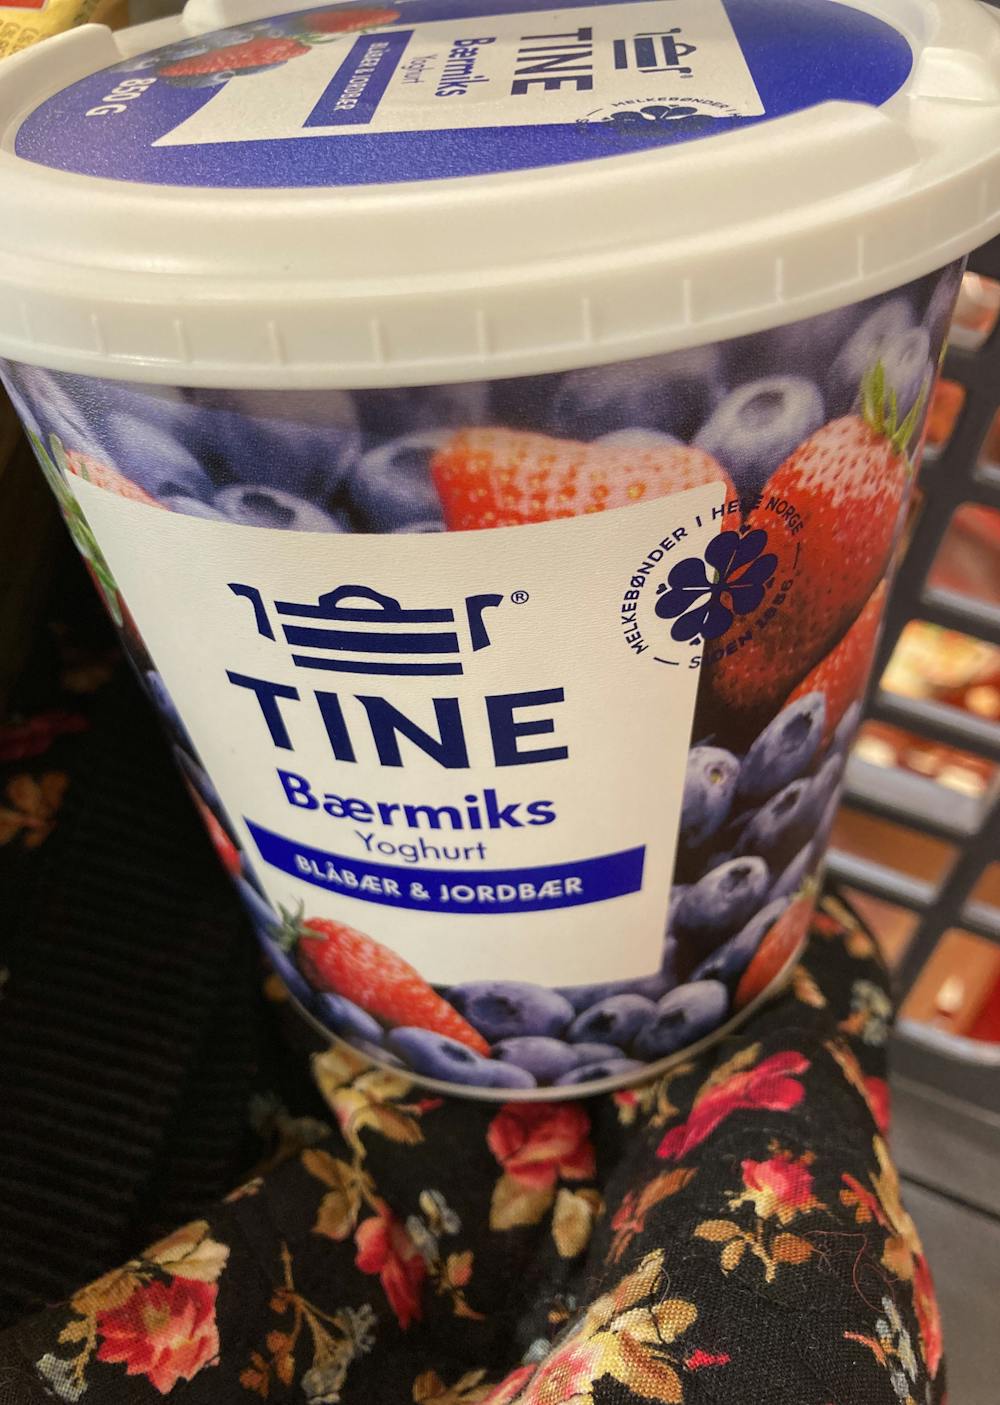 Bærmiks yoghurt , Tine 